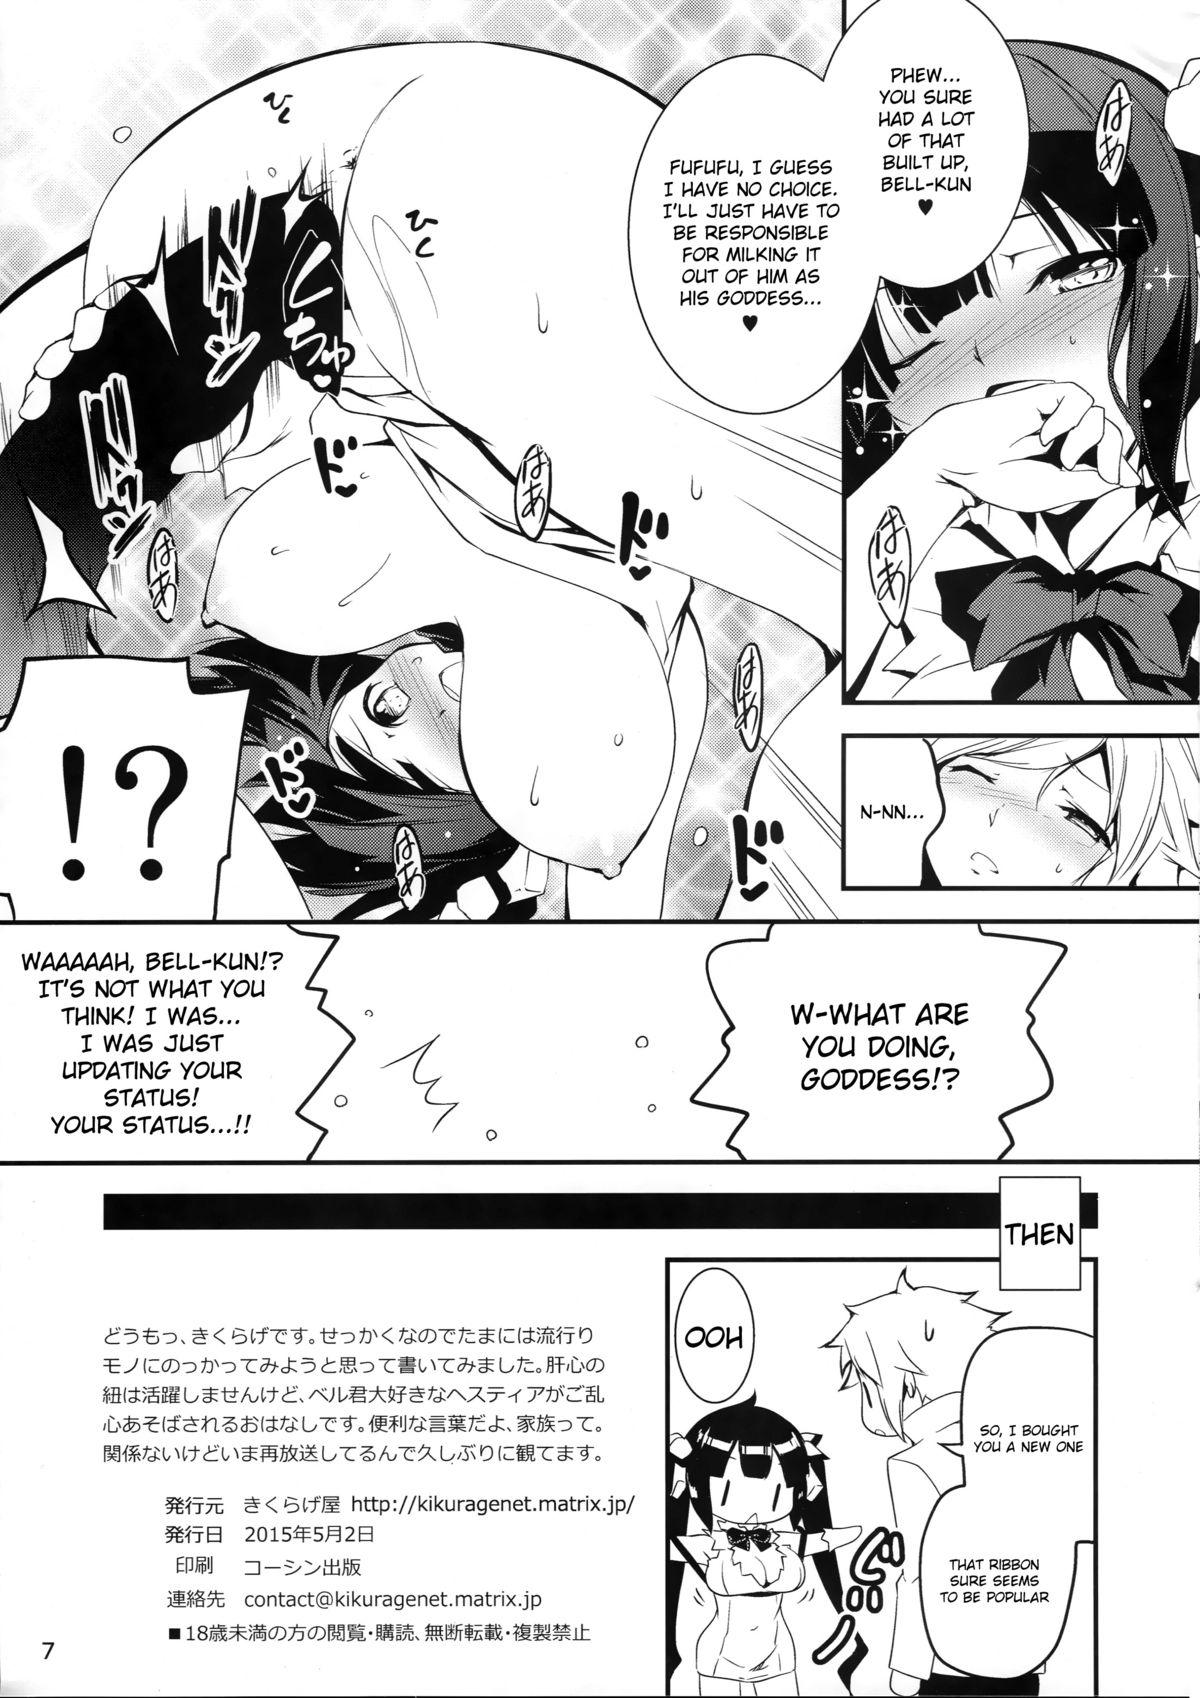 Secretary Kami-sama no Himo - Dungeon ni deai o motomeru no wa machigatteiru darou ka Top - Page 7